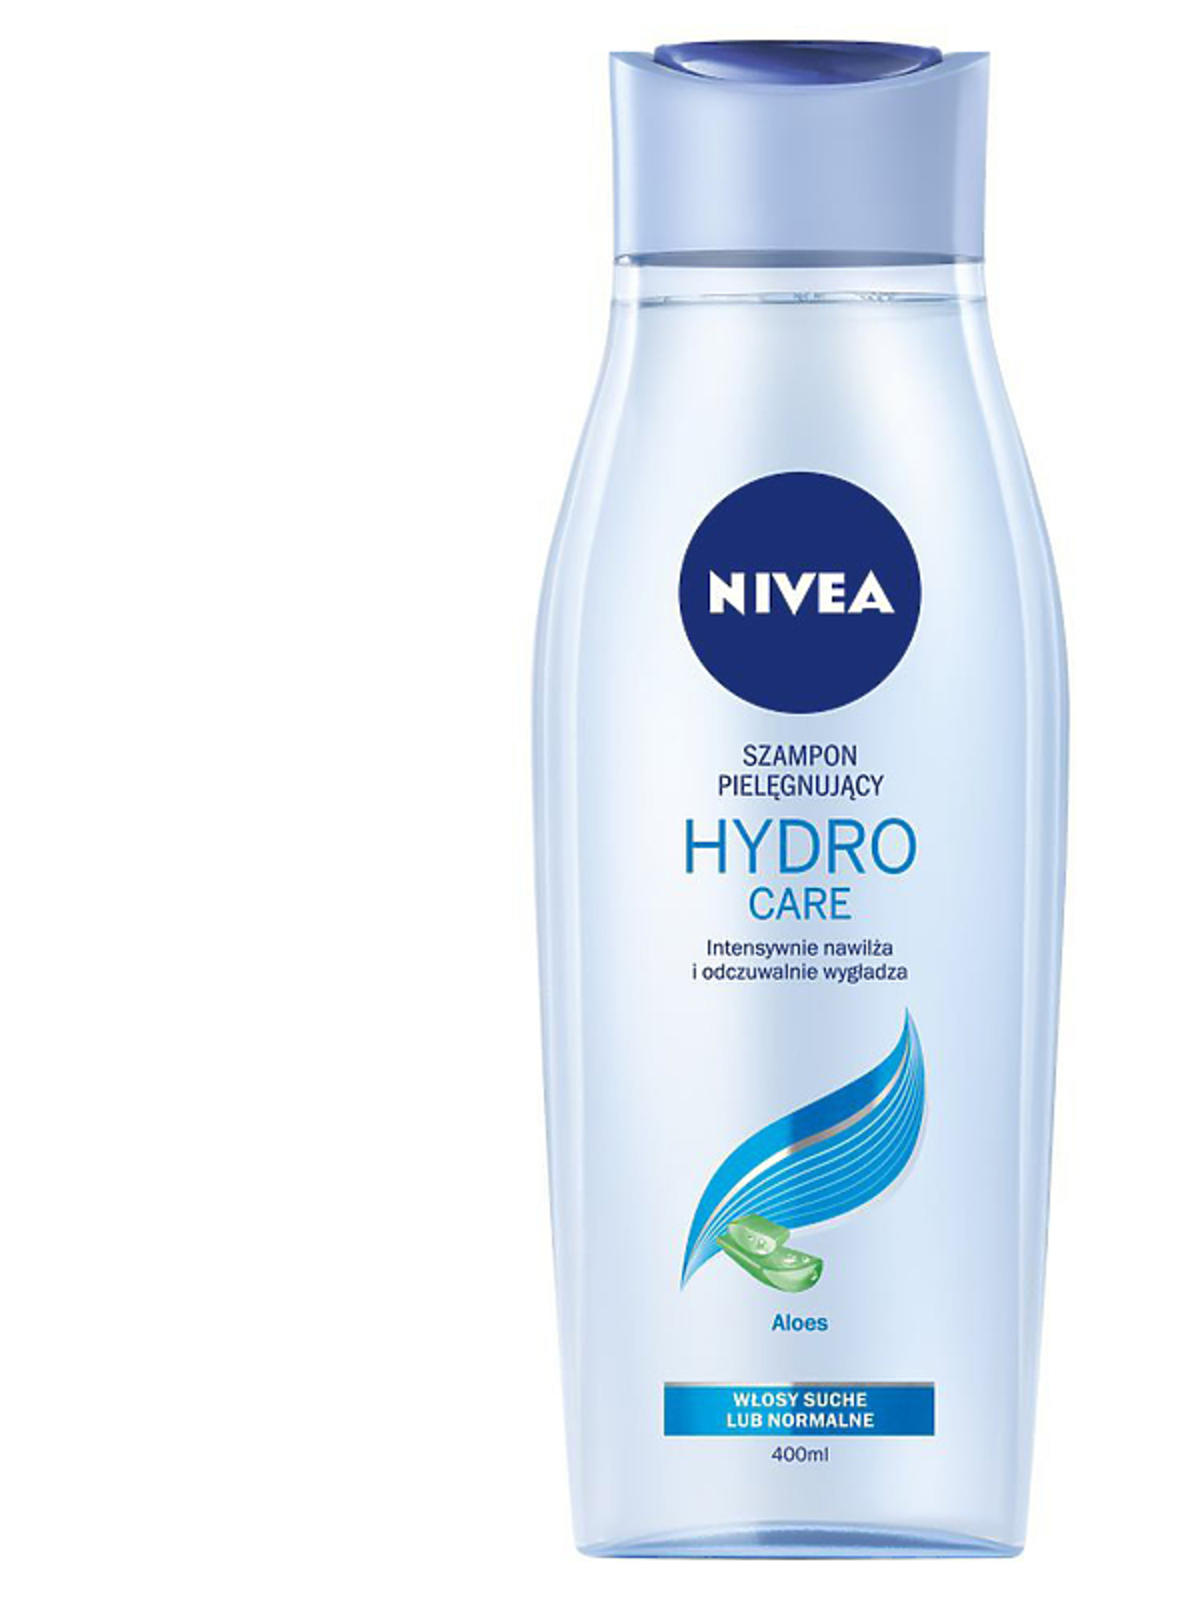 Hydro Care, Nivea, 9,99 zł